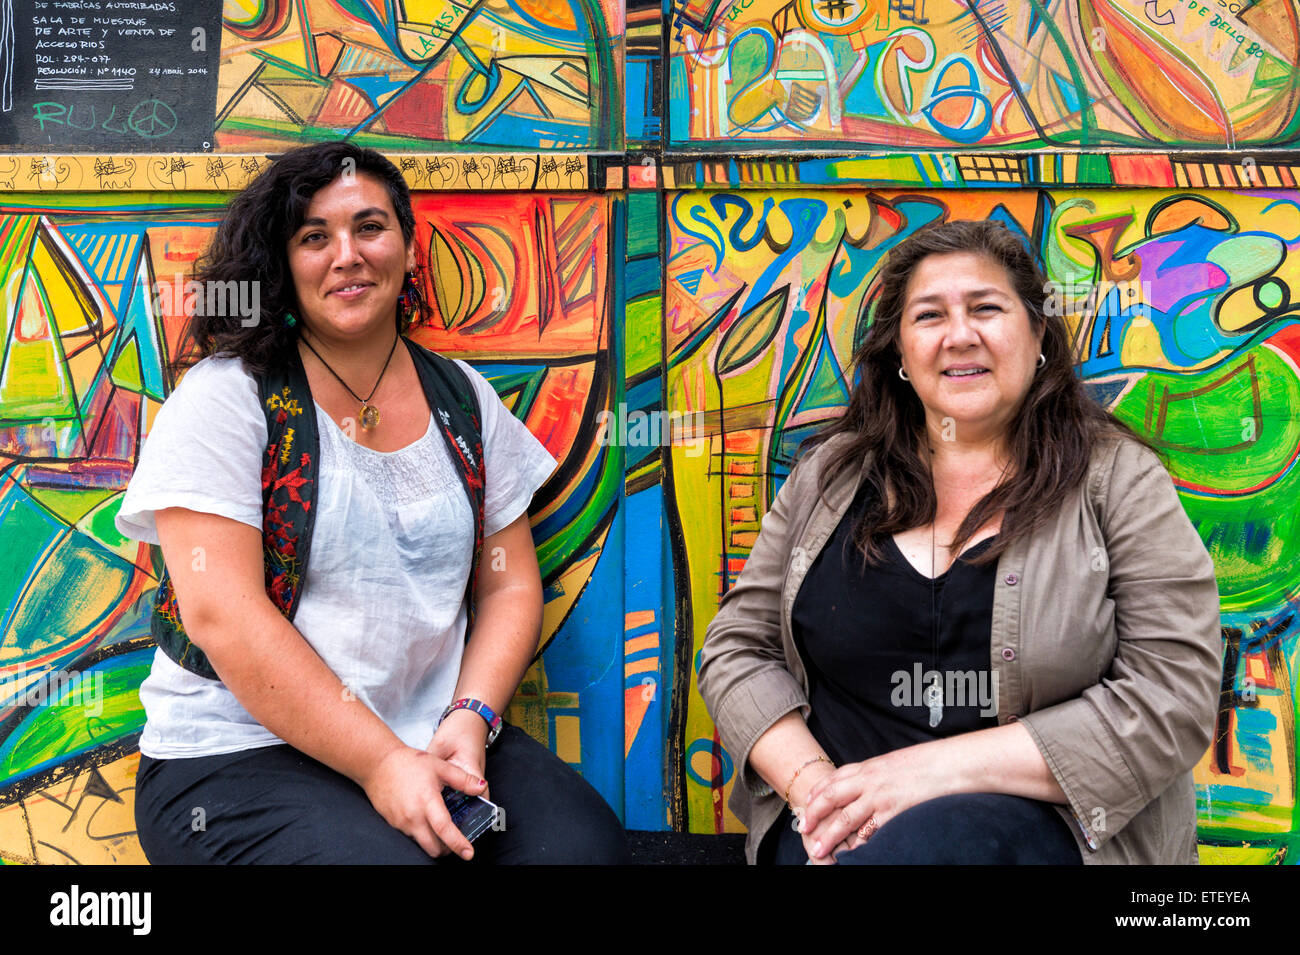 Dos mujeres delante de una pared cubierta de graffiti, Barrio Bellavista, Santiago, Chile. Foto de stock